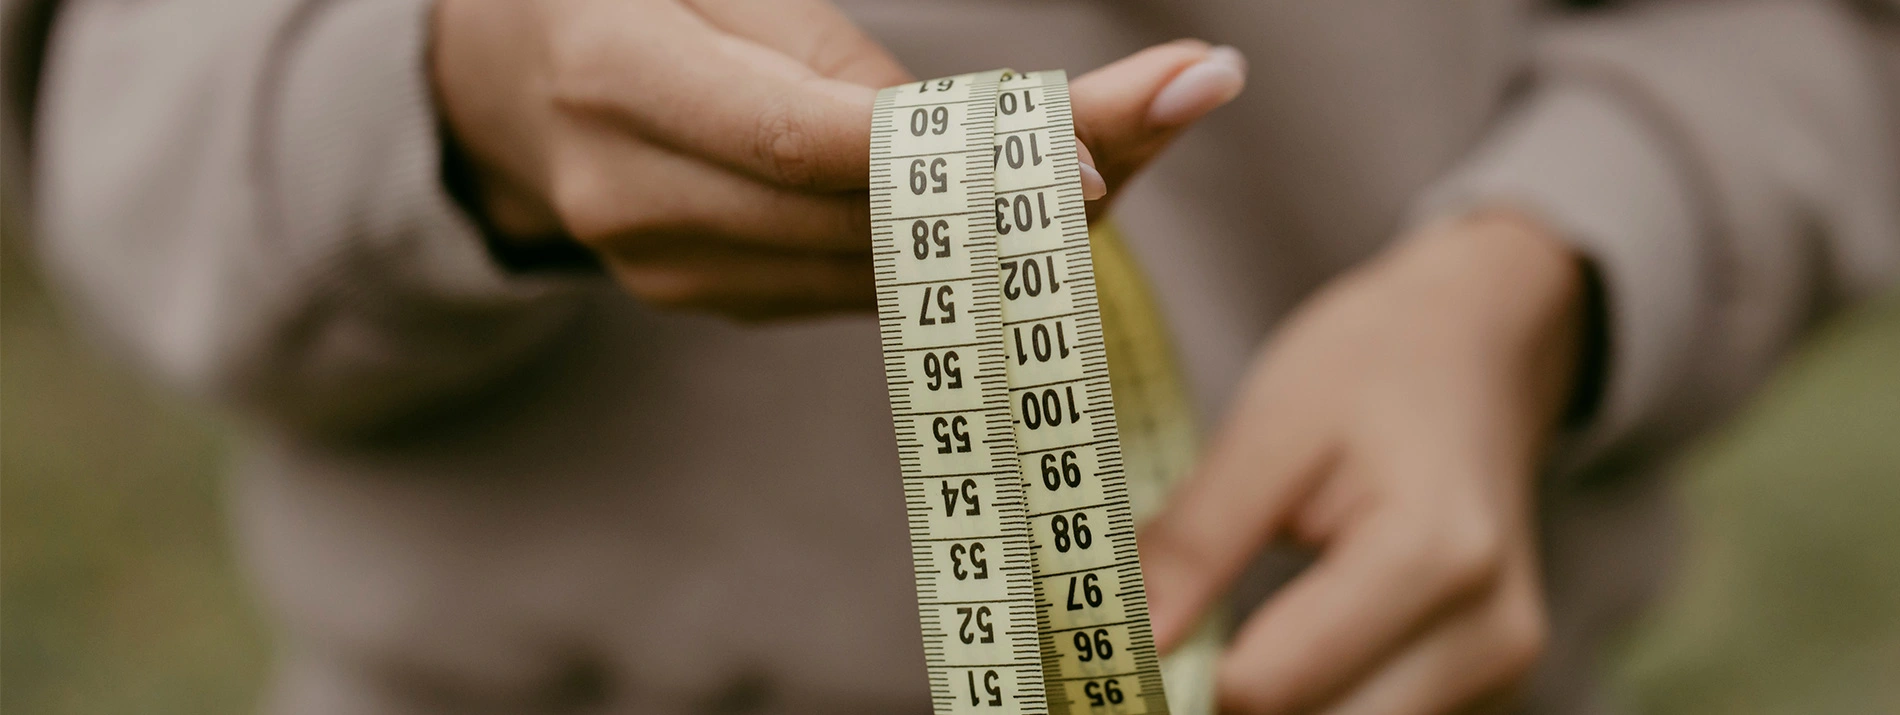 انخفاض وزن الجسم عن المعدل الطبيعي بيت العلم